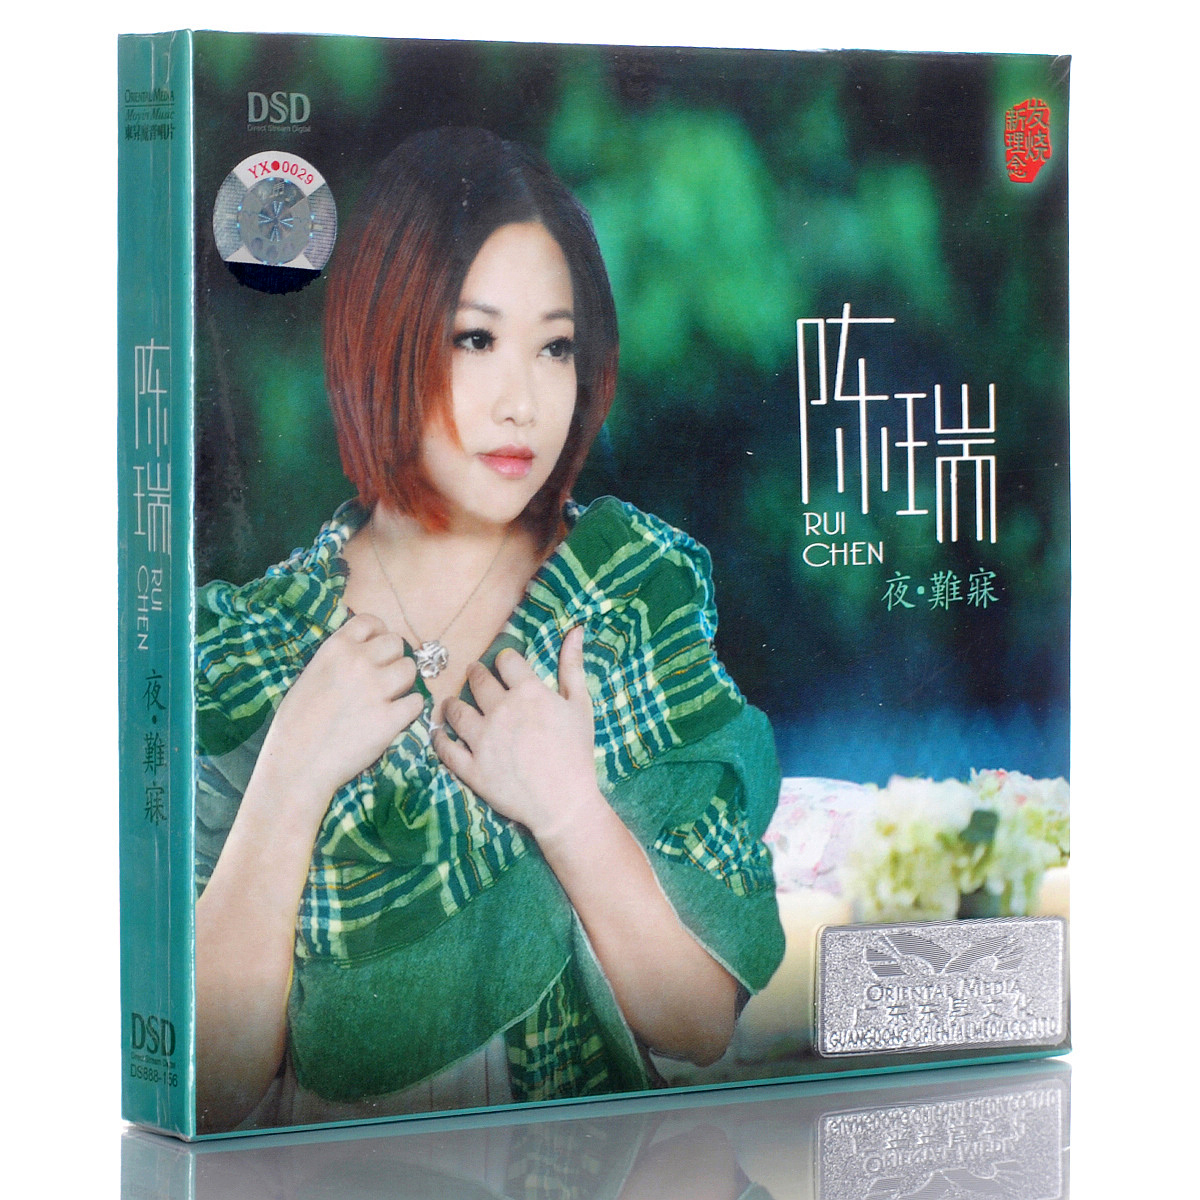 正版唱片 陈瑞专辑 经典歌曲发烧女声车载CD音乐光盘碟片